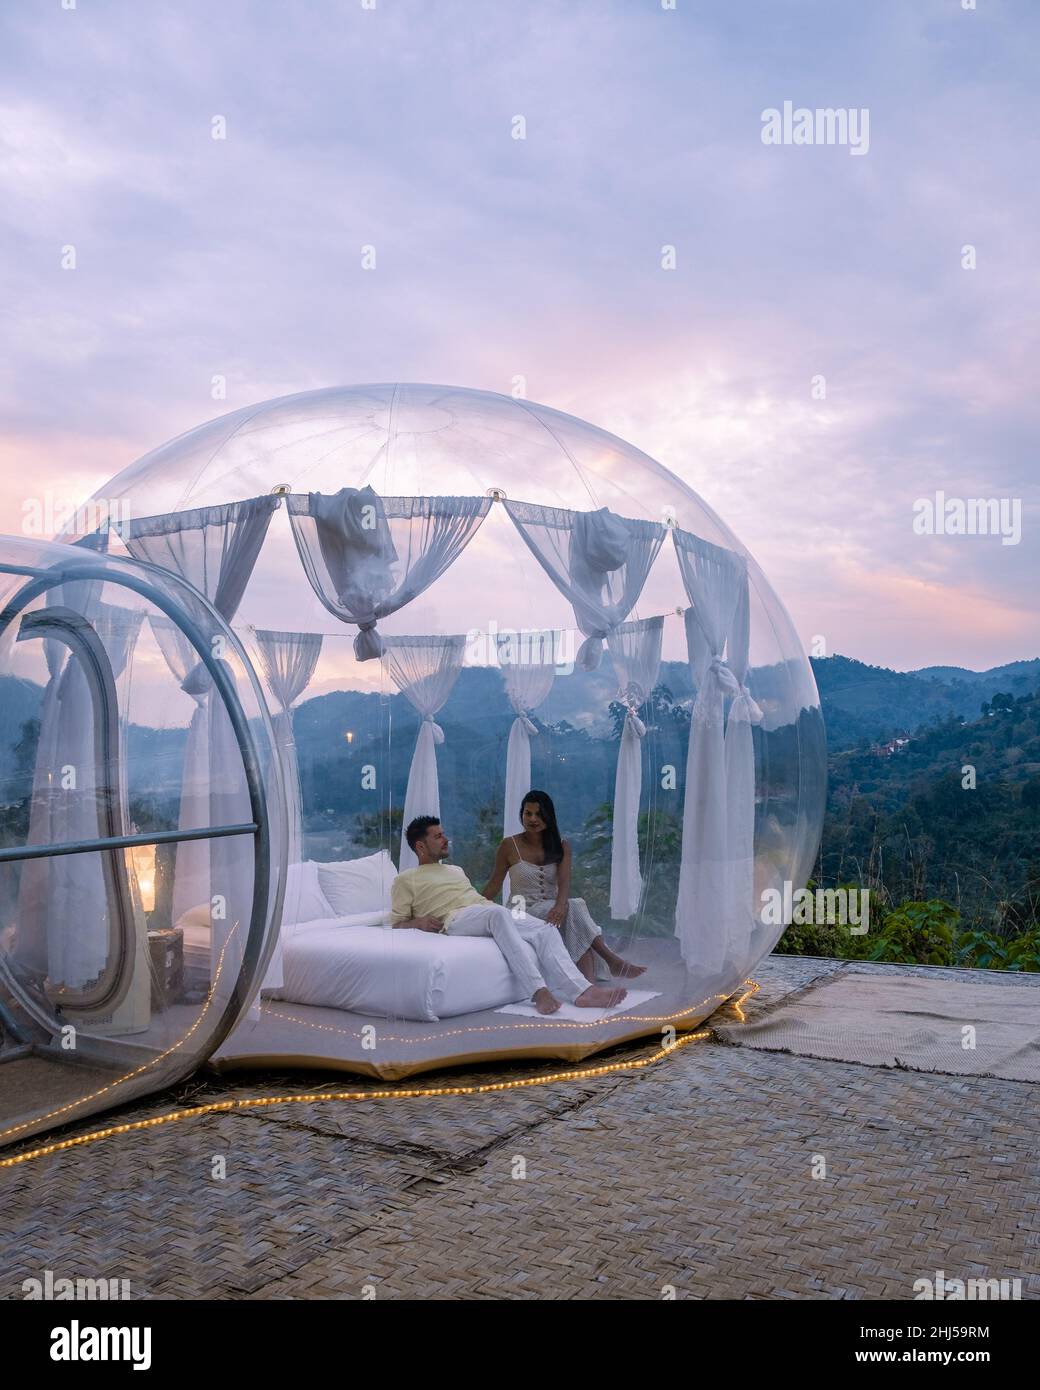 Tente bulle dôme de glamping dans les montagnes de Chiang Mai Thaïlande,  tente cloche transparente avec lit confortable et oreiller dans la forêt,  hôtel de glamping, voyage de luxe, camping glamour Photo